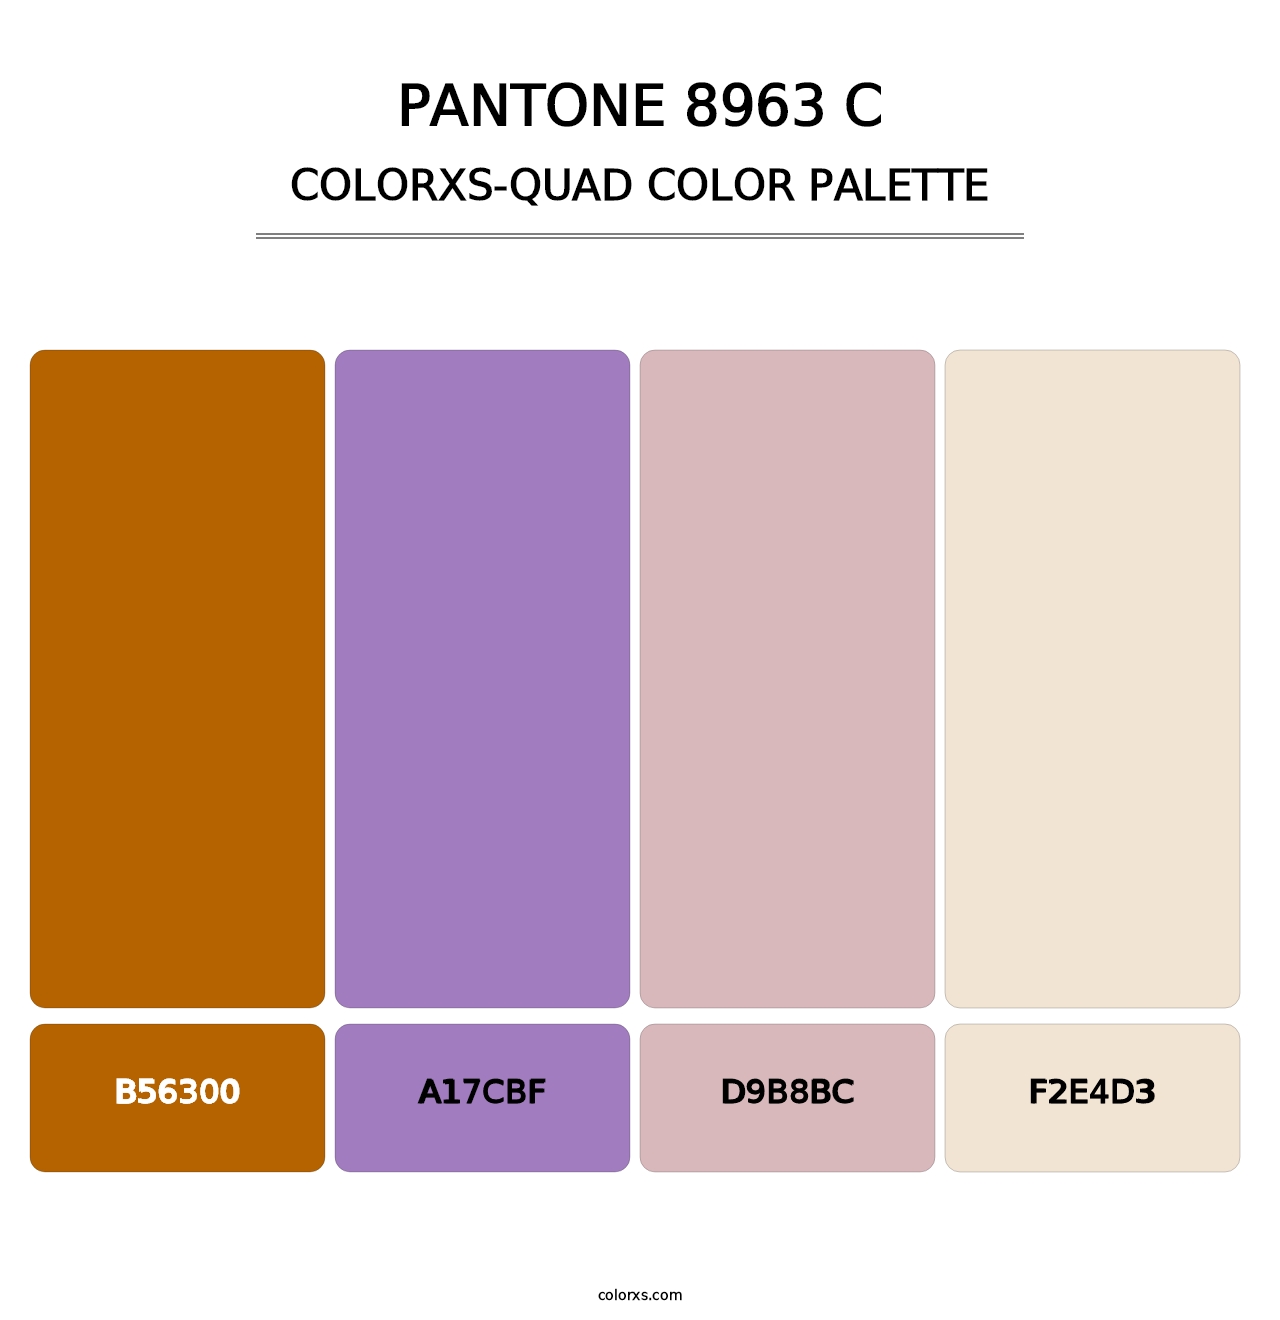 PANTONE 8963 C - Colorxs Quad Palette